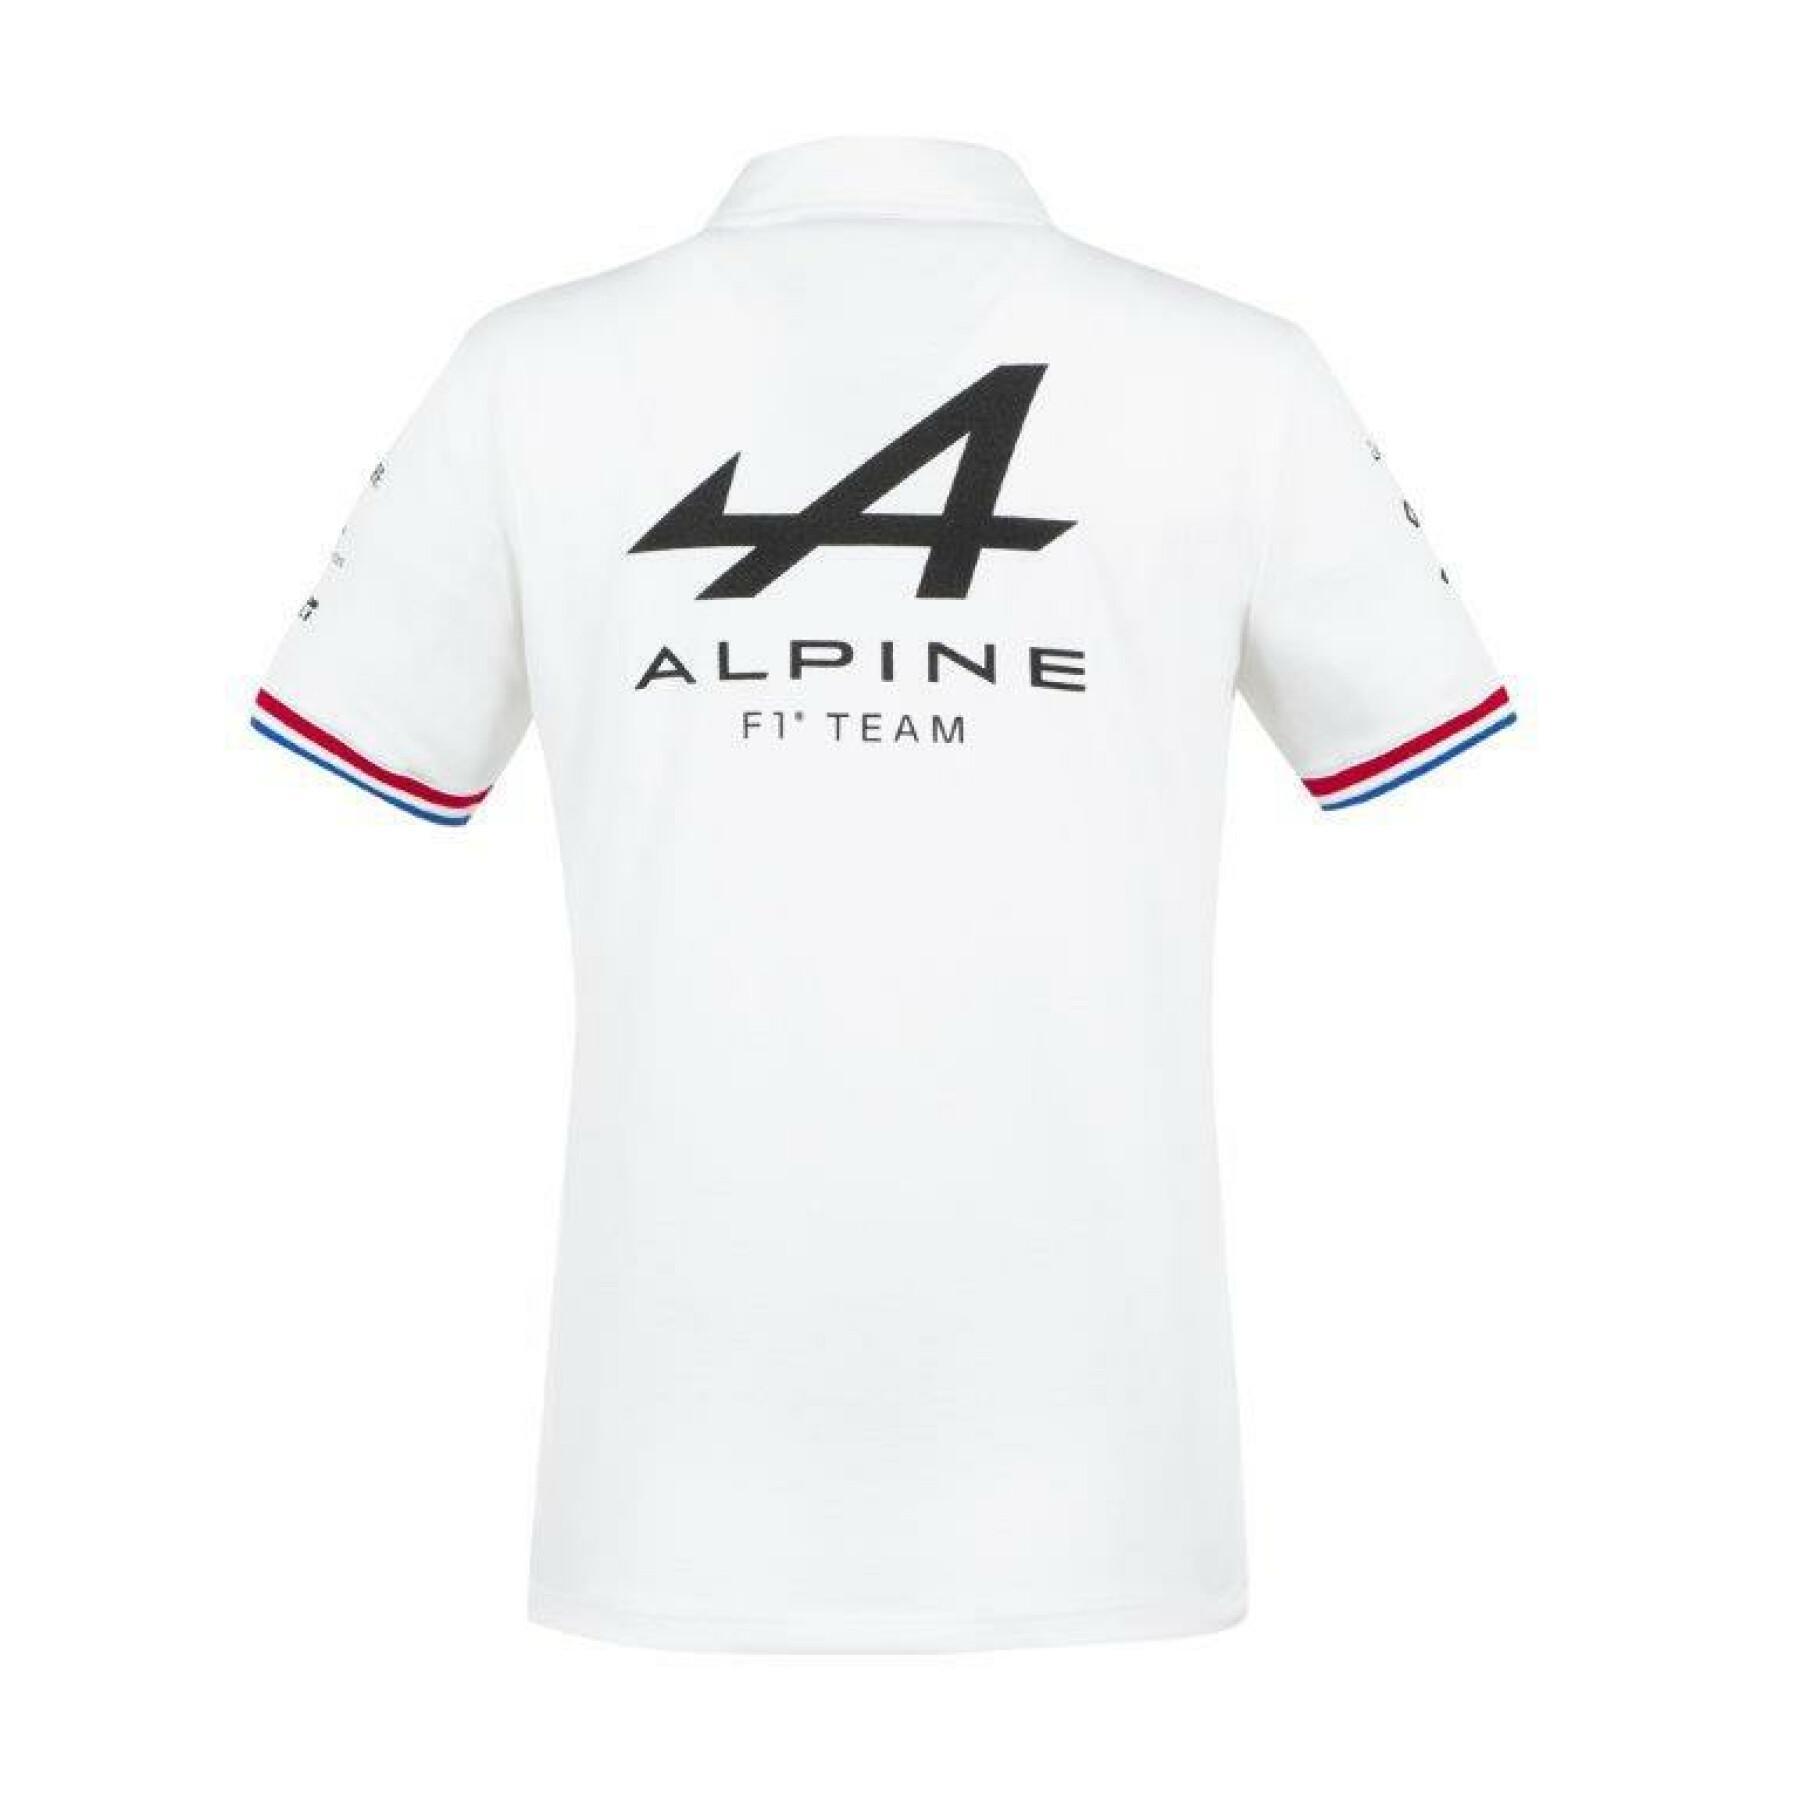 Kortärmad polotröja för damer Le Coq Sportif Alpine F1 2021/22